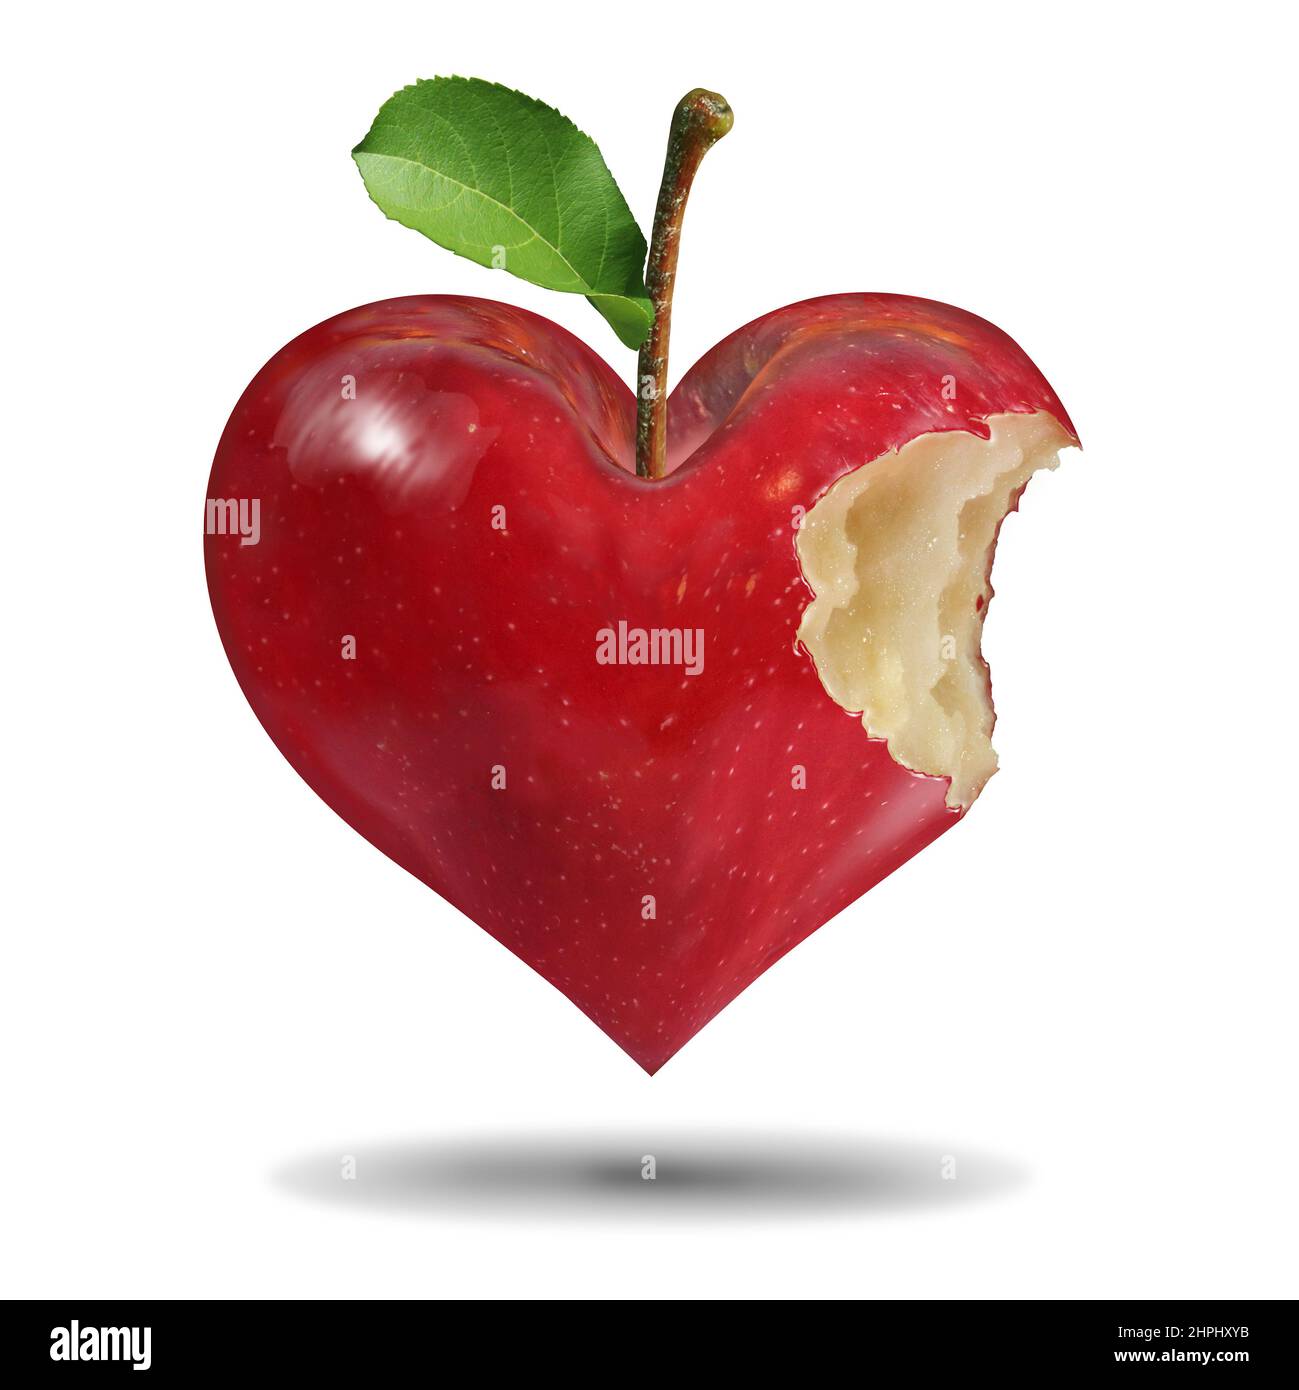 Gesundes Leben Symbol und Essen gute Ernährung wie ein roter Apfel mit einem Bissen in einer Liebe Herz Form gegessen für ein Leben fit Lifestyle-Konzept. Stockfoto